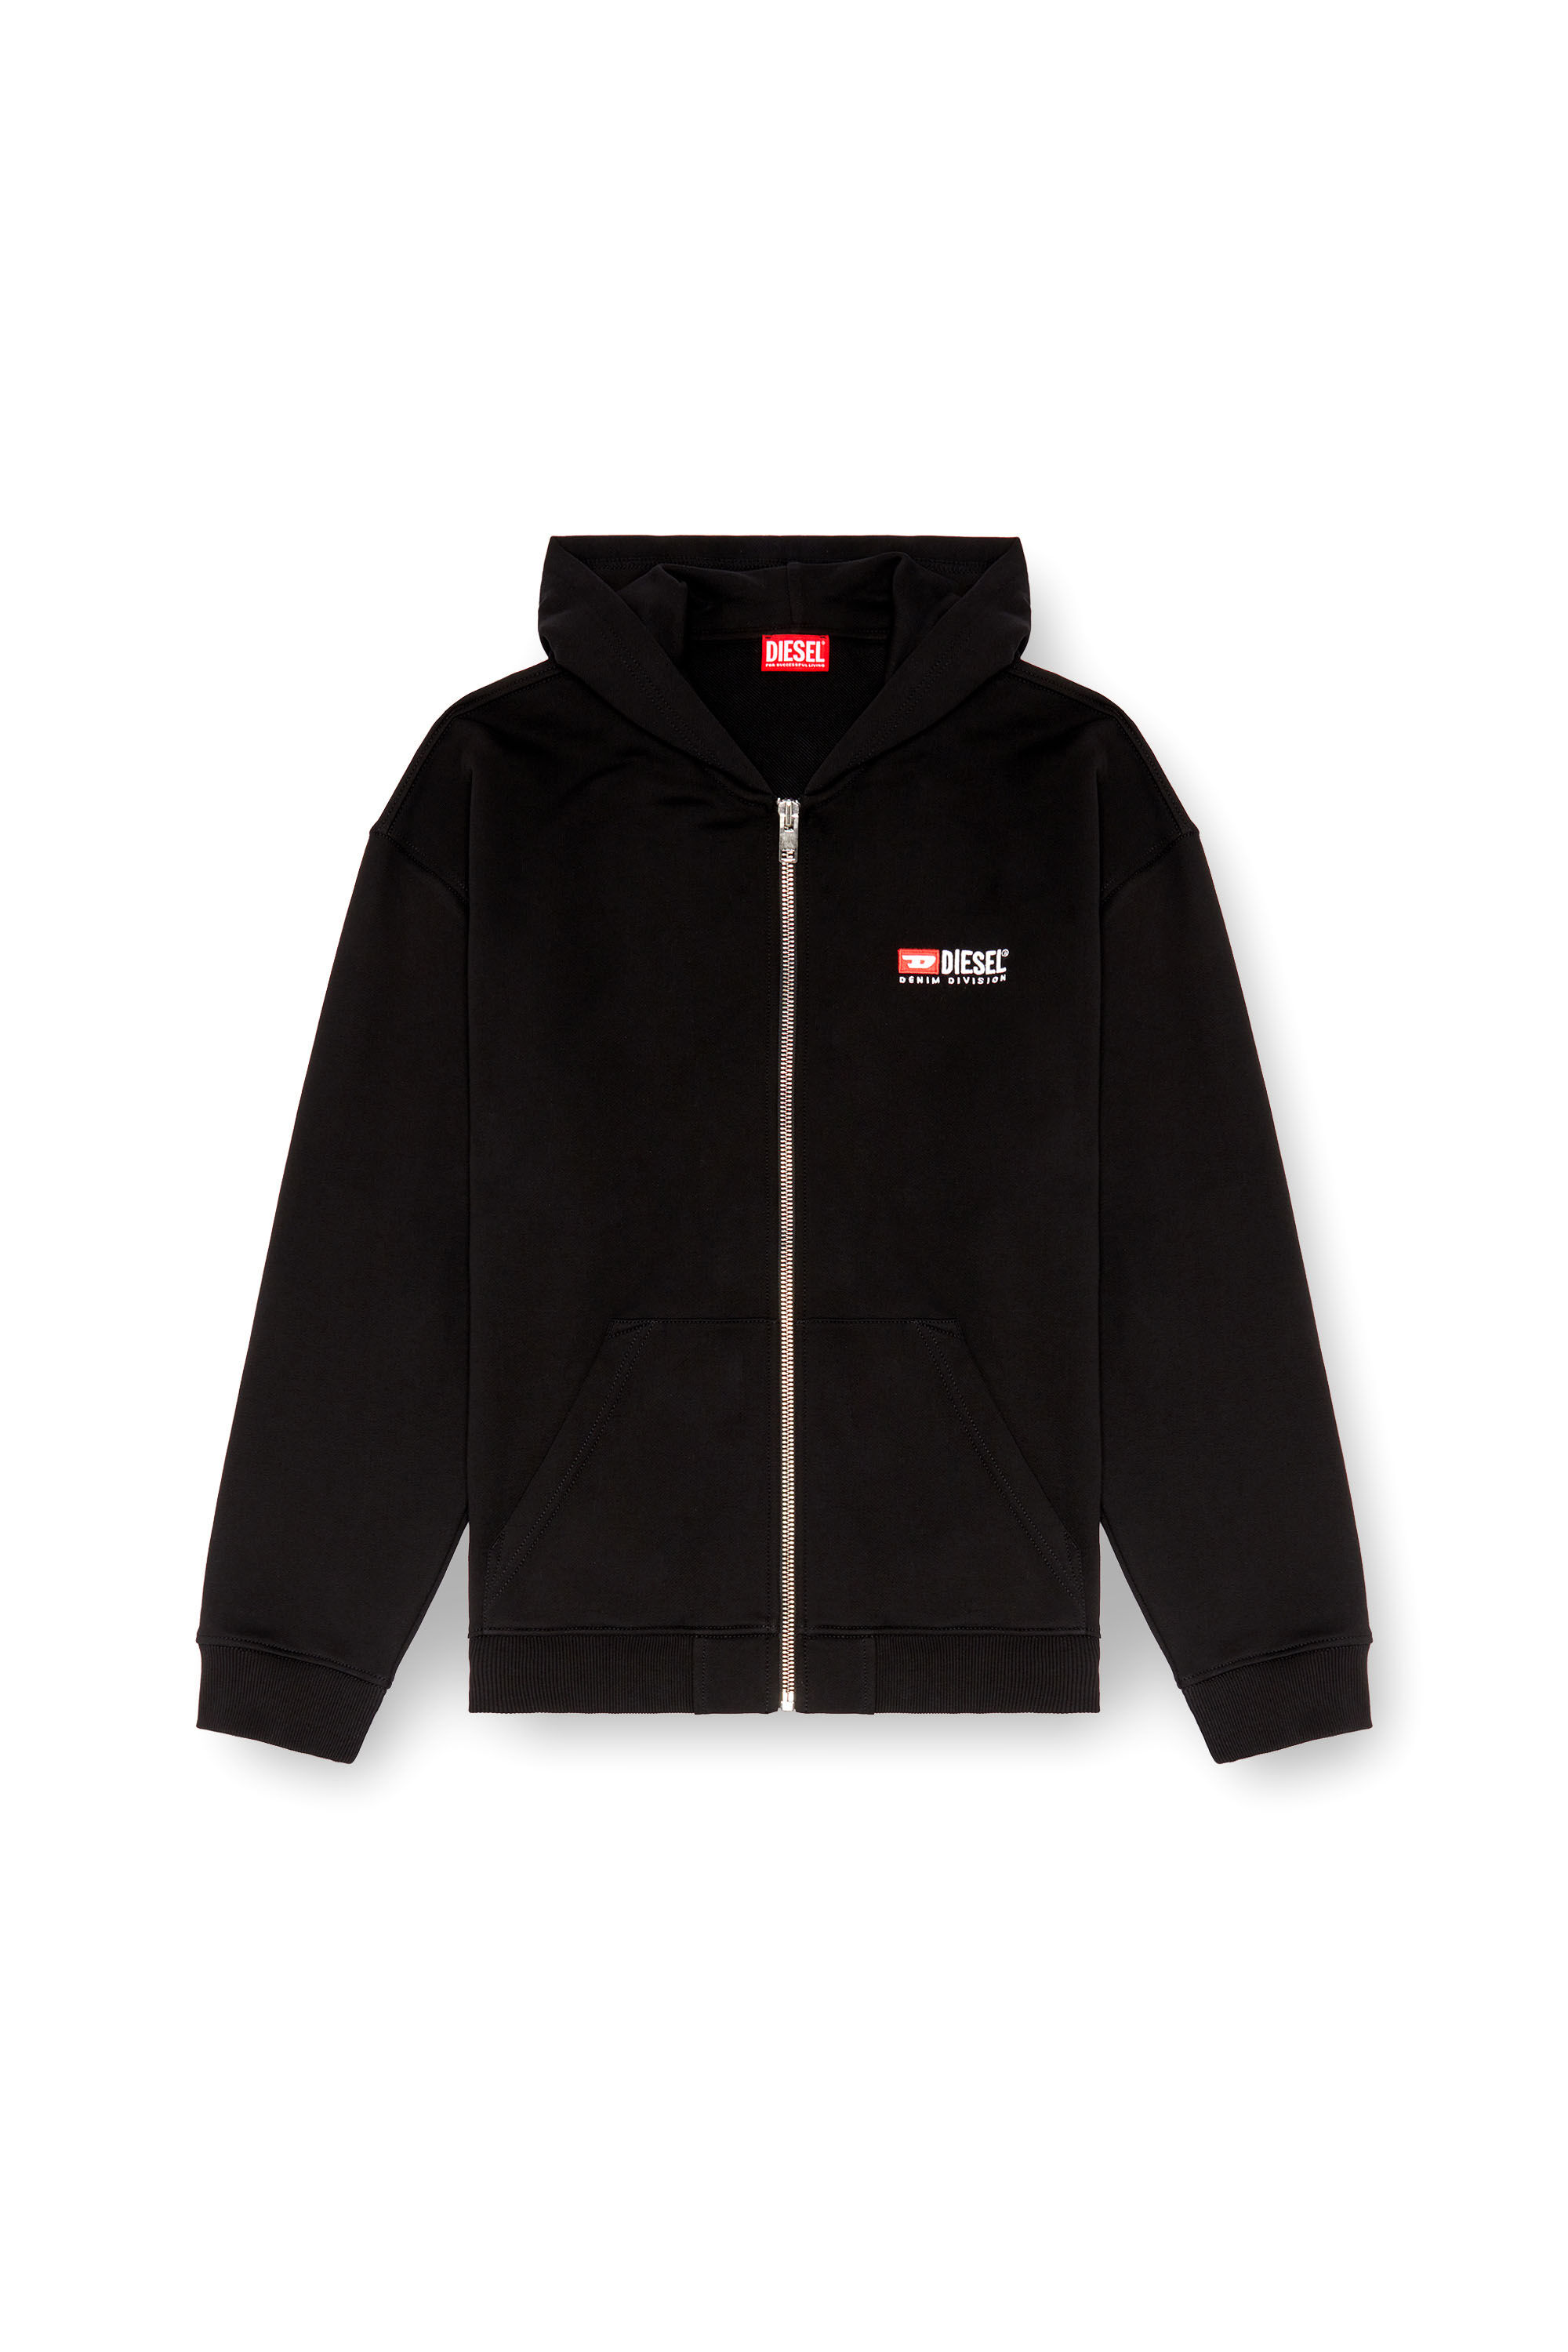 Diesel - S-BOXT-HOOD-ZIP-DIV, Male Zip-up hoodie with Diesel embroidery in ブラック - Image 2